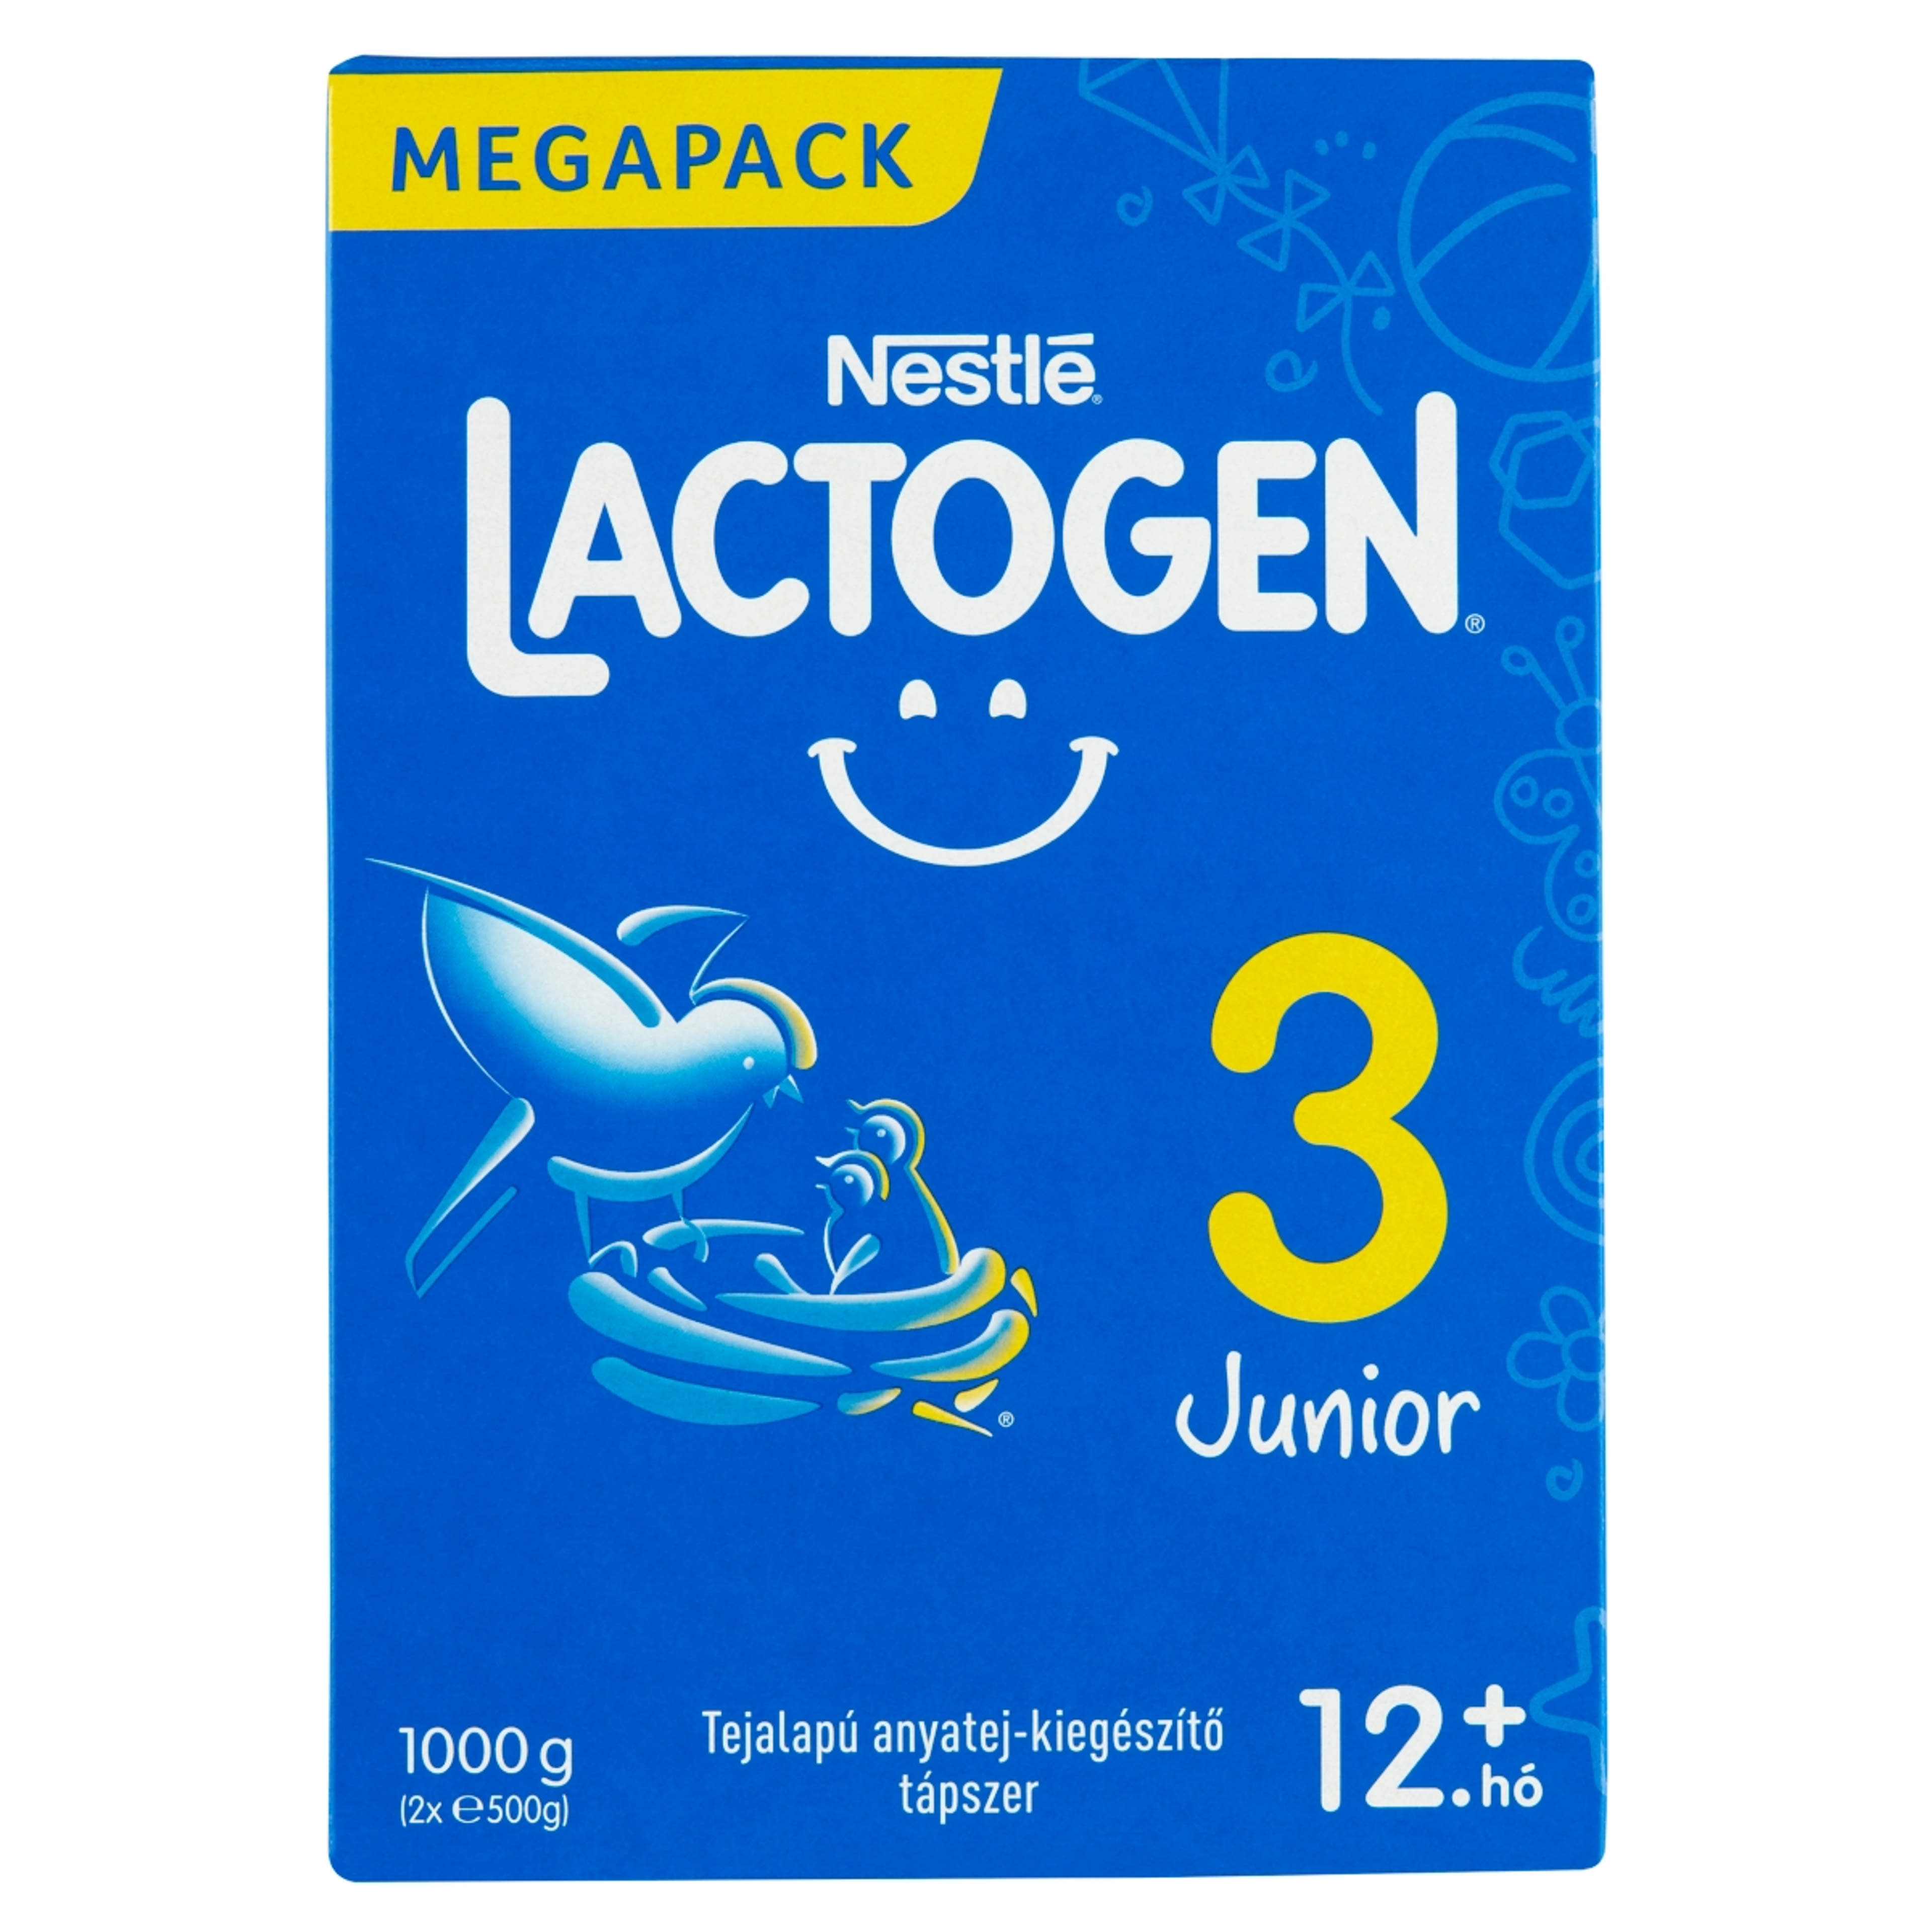 Nestlé Lactogen 3 Junior tápszer 12 hónapos kortól - 1000 g